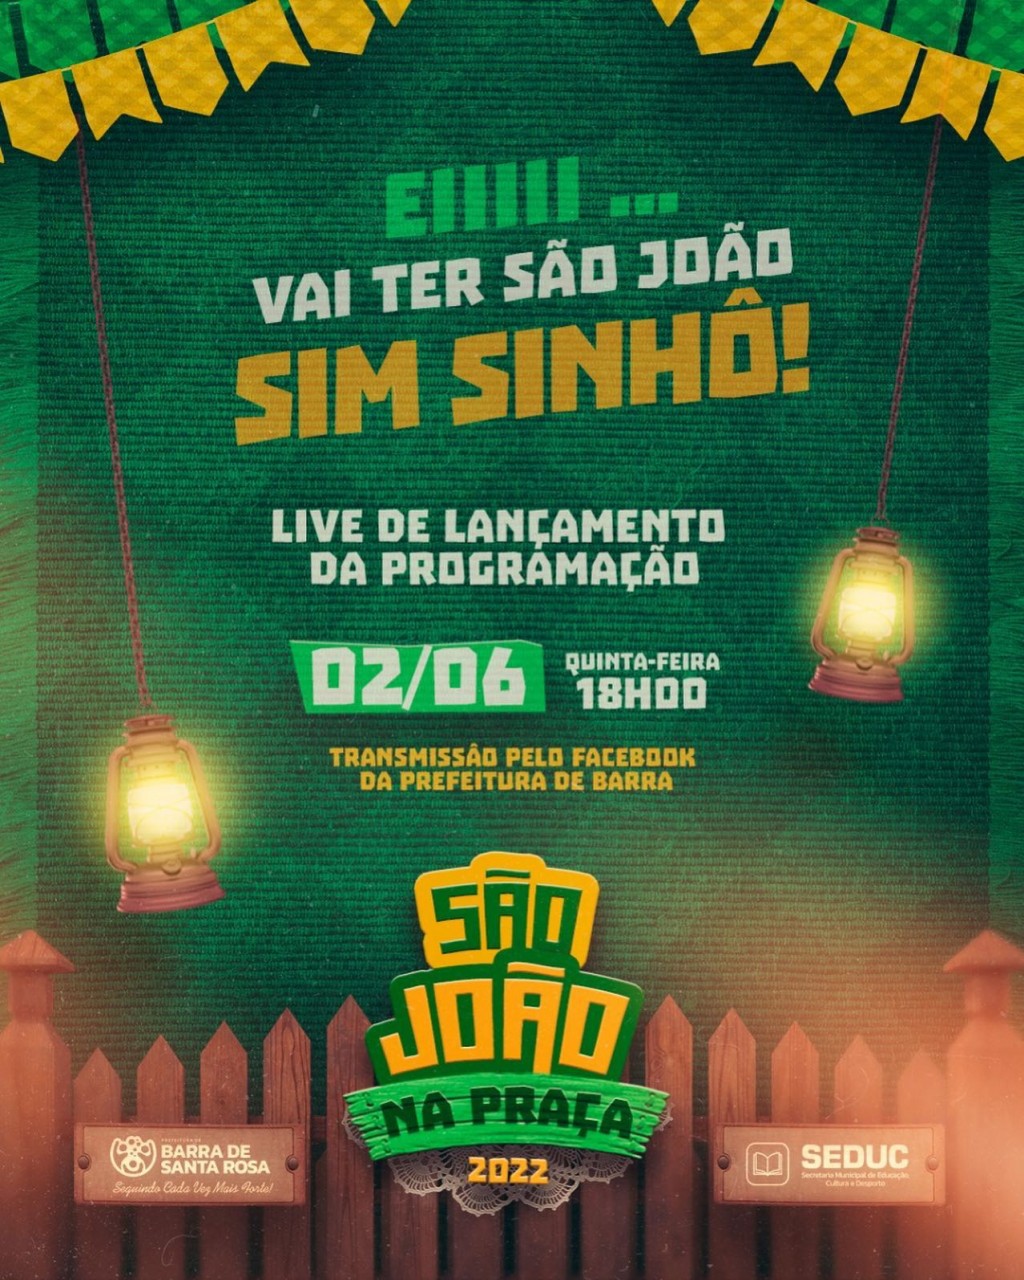 São João na Praça 2022  terá programação divulgada em live